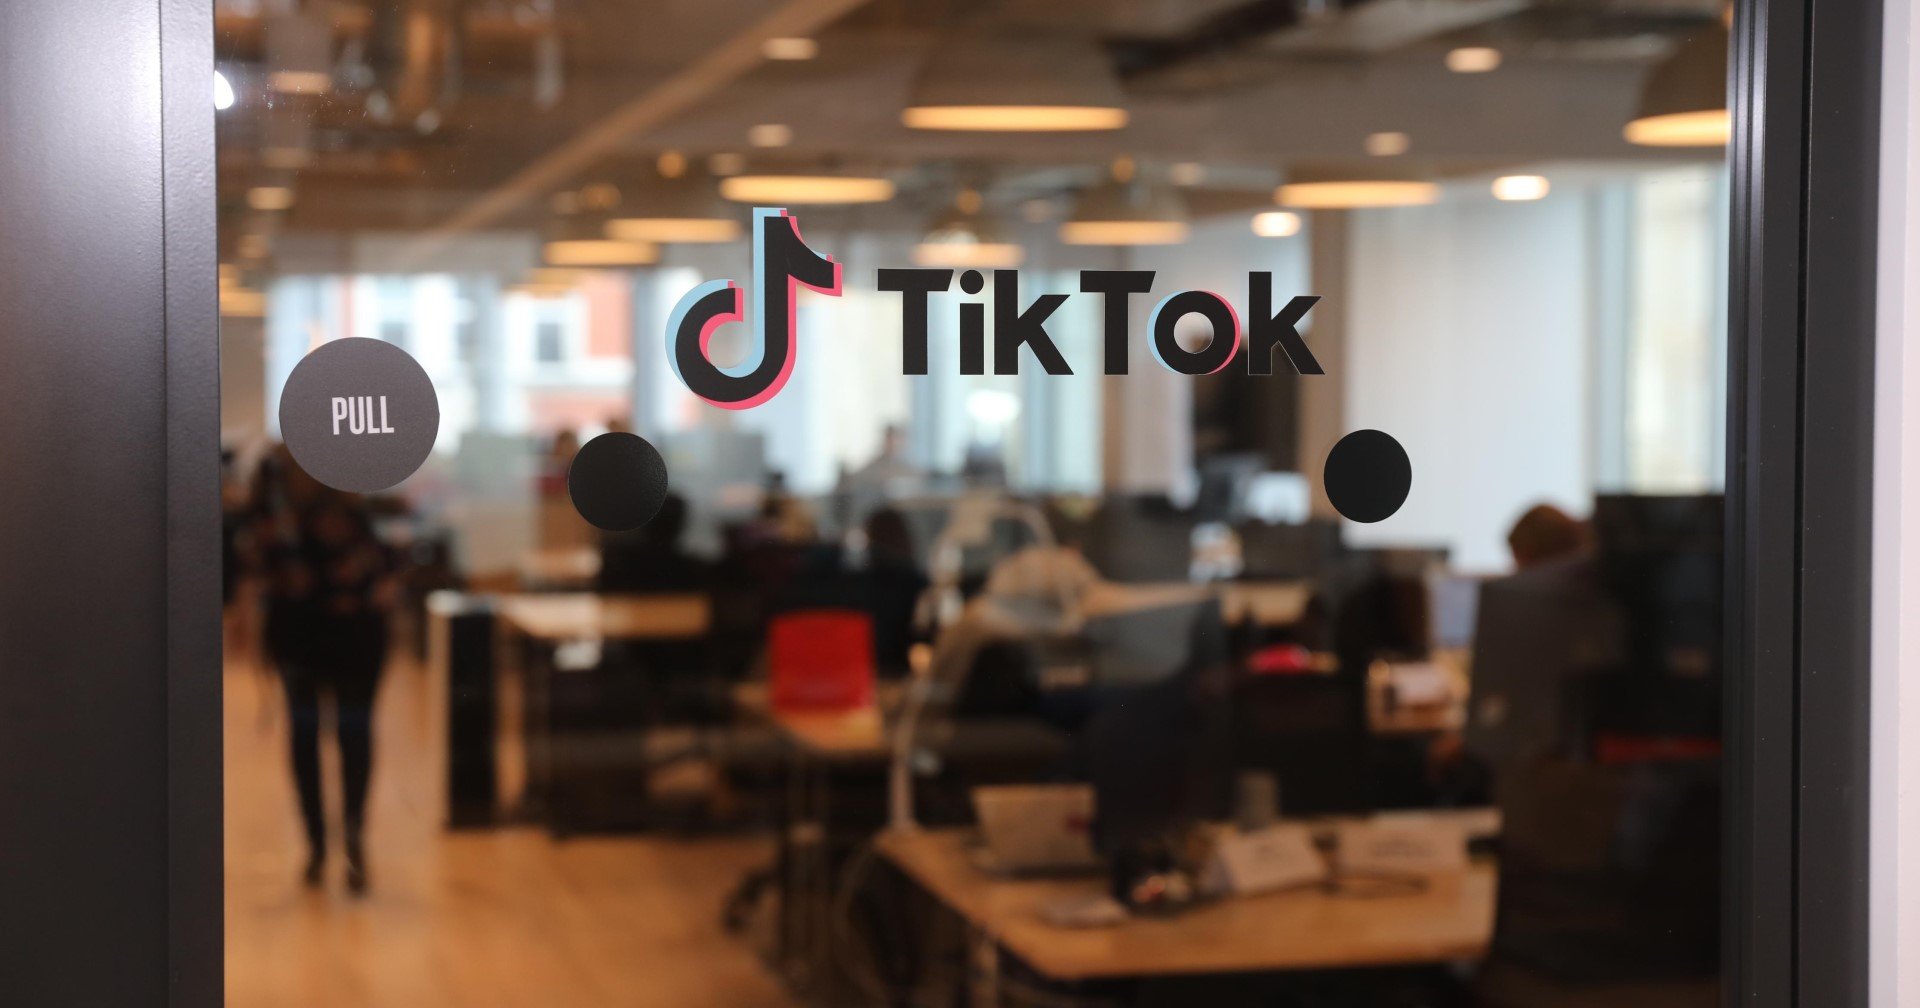 อินโดนีเซียเผย TikTok ละเมิดมาตรการห้ามให้บริการแพลตฟอร์มอีคอมเมิร์ซ